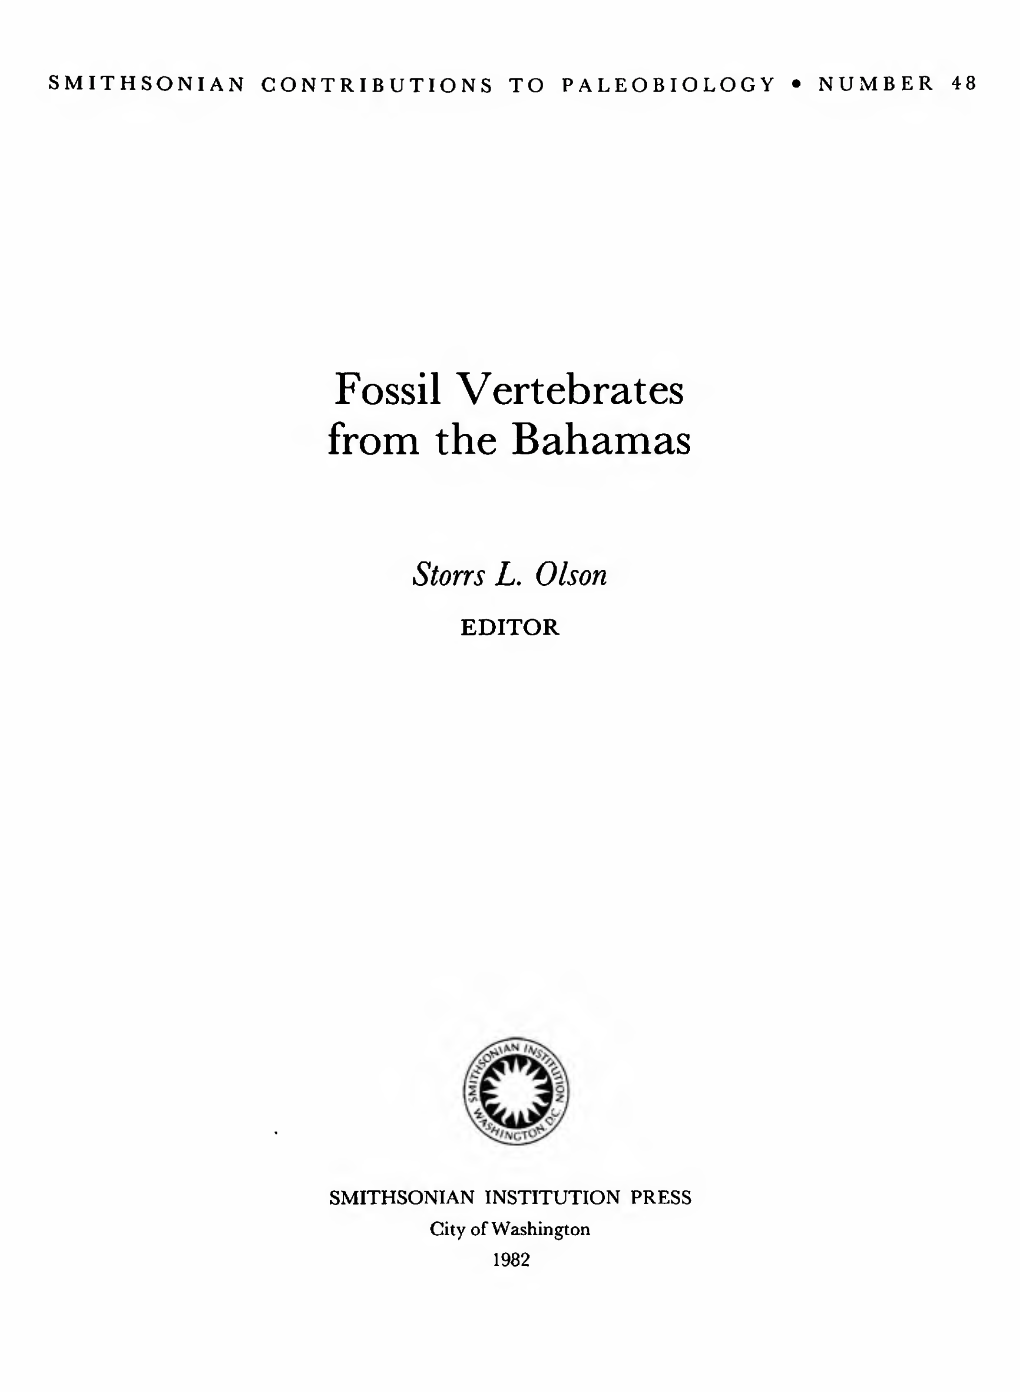 Fossil Vertebrates from the Bahamas